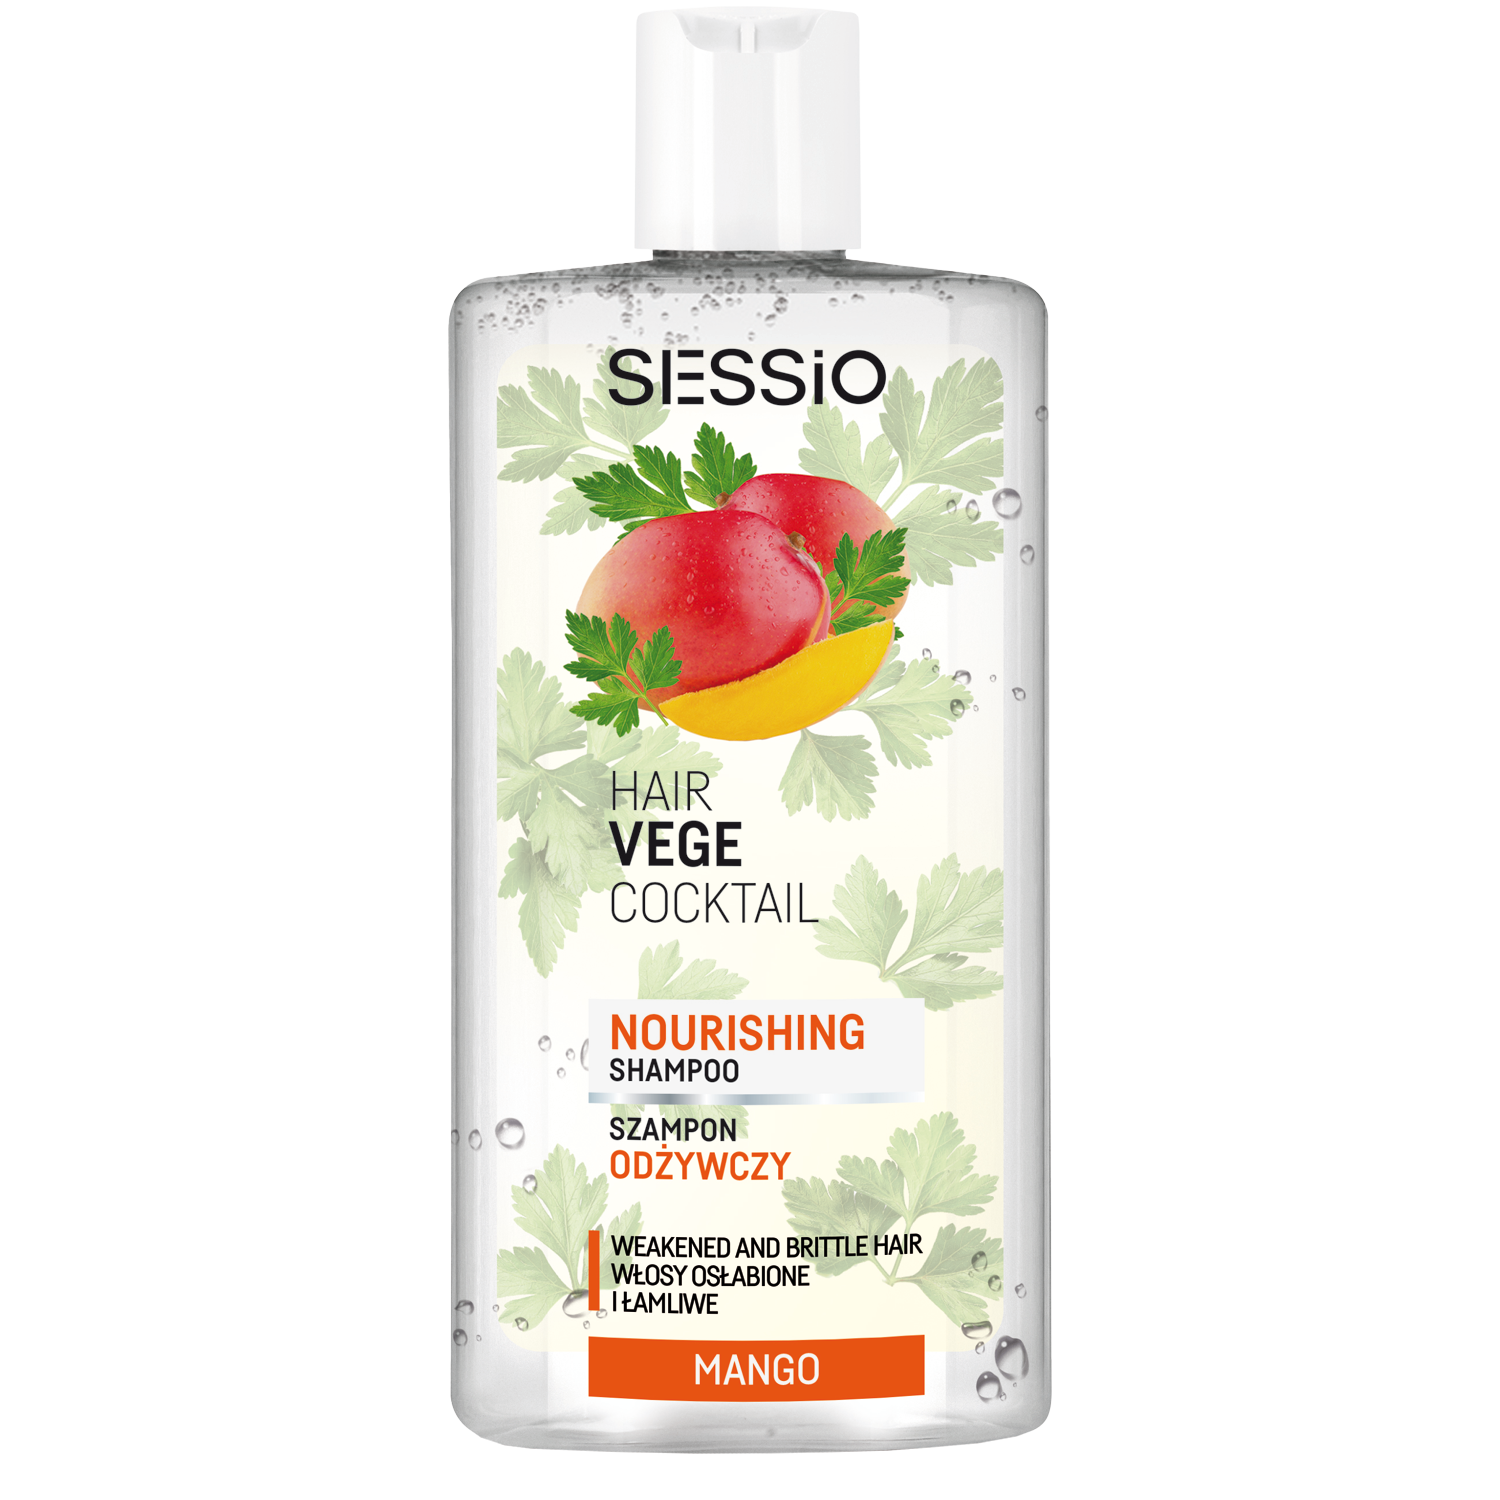 Sessio Hair Vege Cocktail питательный шампунь для волос с экстрактом манго, 300 г